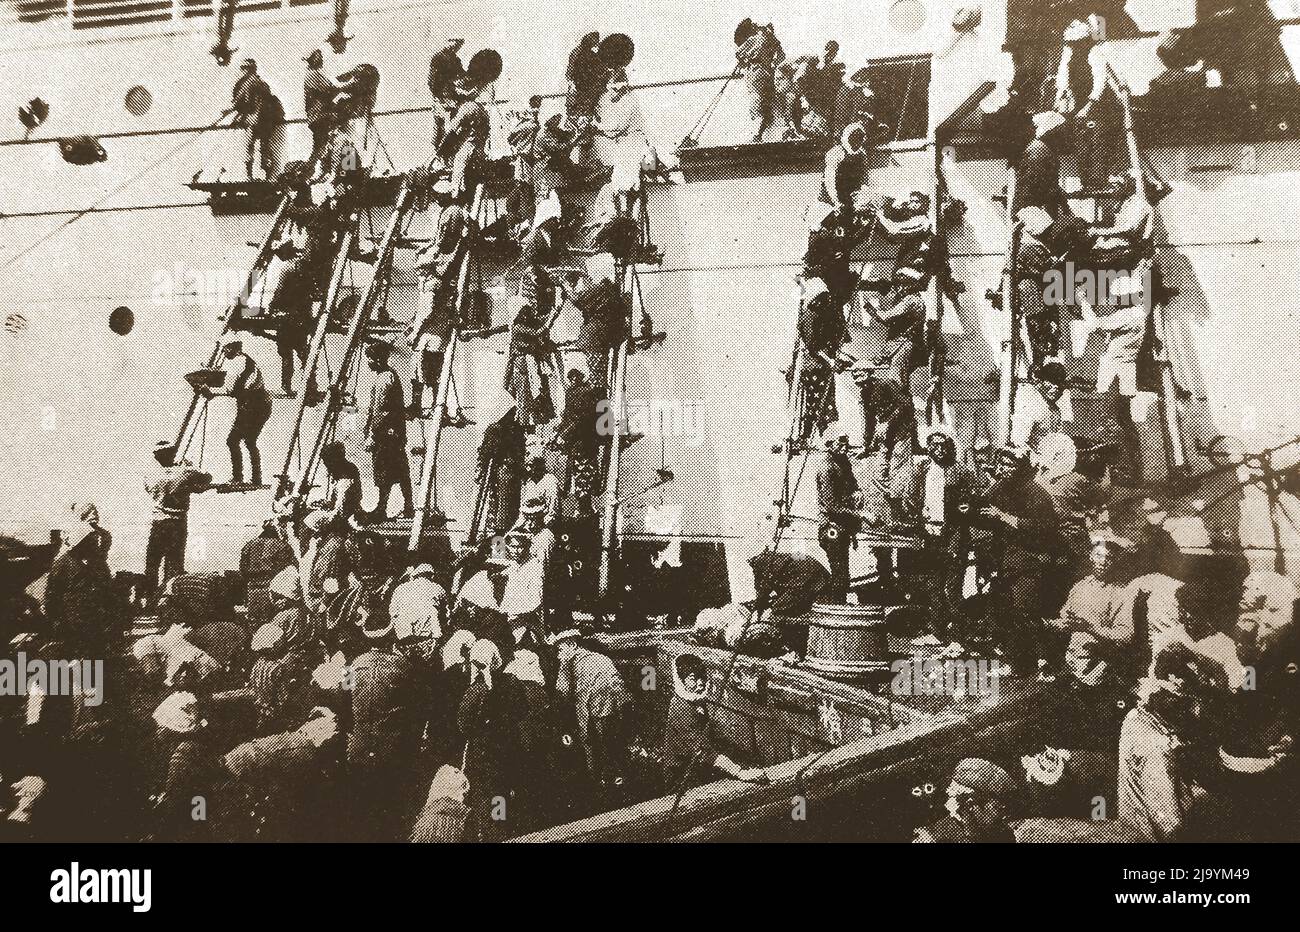 Japon - une ancienne illustration montrant des travailleurs décrits comme des 'coolies japonaise' utilisant des échelles pour alimenter un gros navire avec du charbon à la main en utilisant des paniers à Yokohama, vers 1930s ------ 日本 - 1930年代頃、横浜でバスケットを使って石炭を手作業で石炭で燃やすためにはしごを使った「日本のクーリー」と表現された労働者を示す古いイラスト Banque D'Images